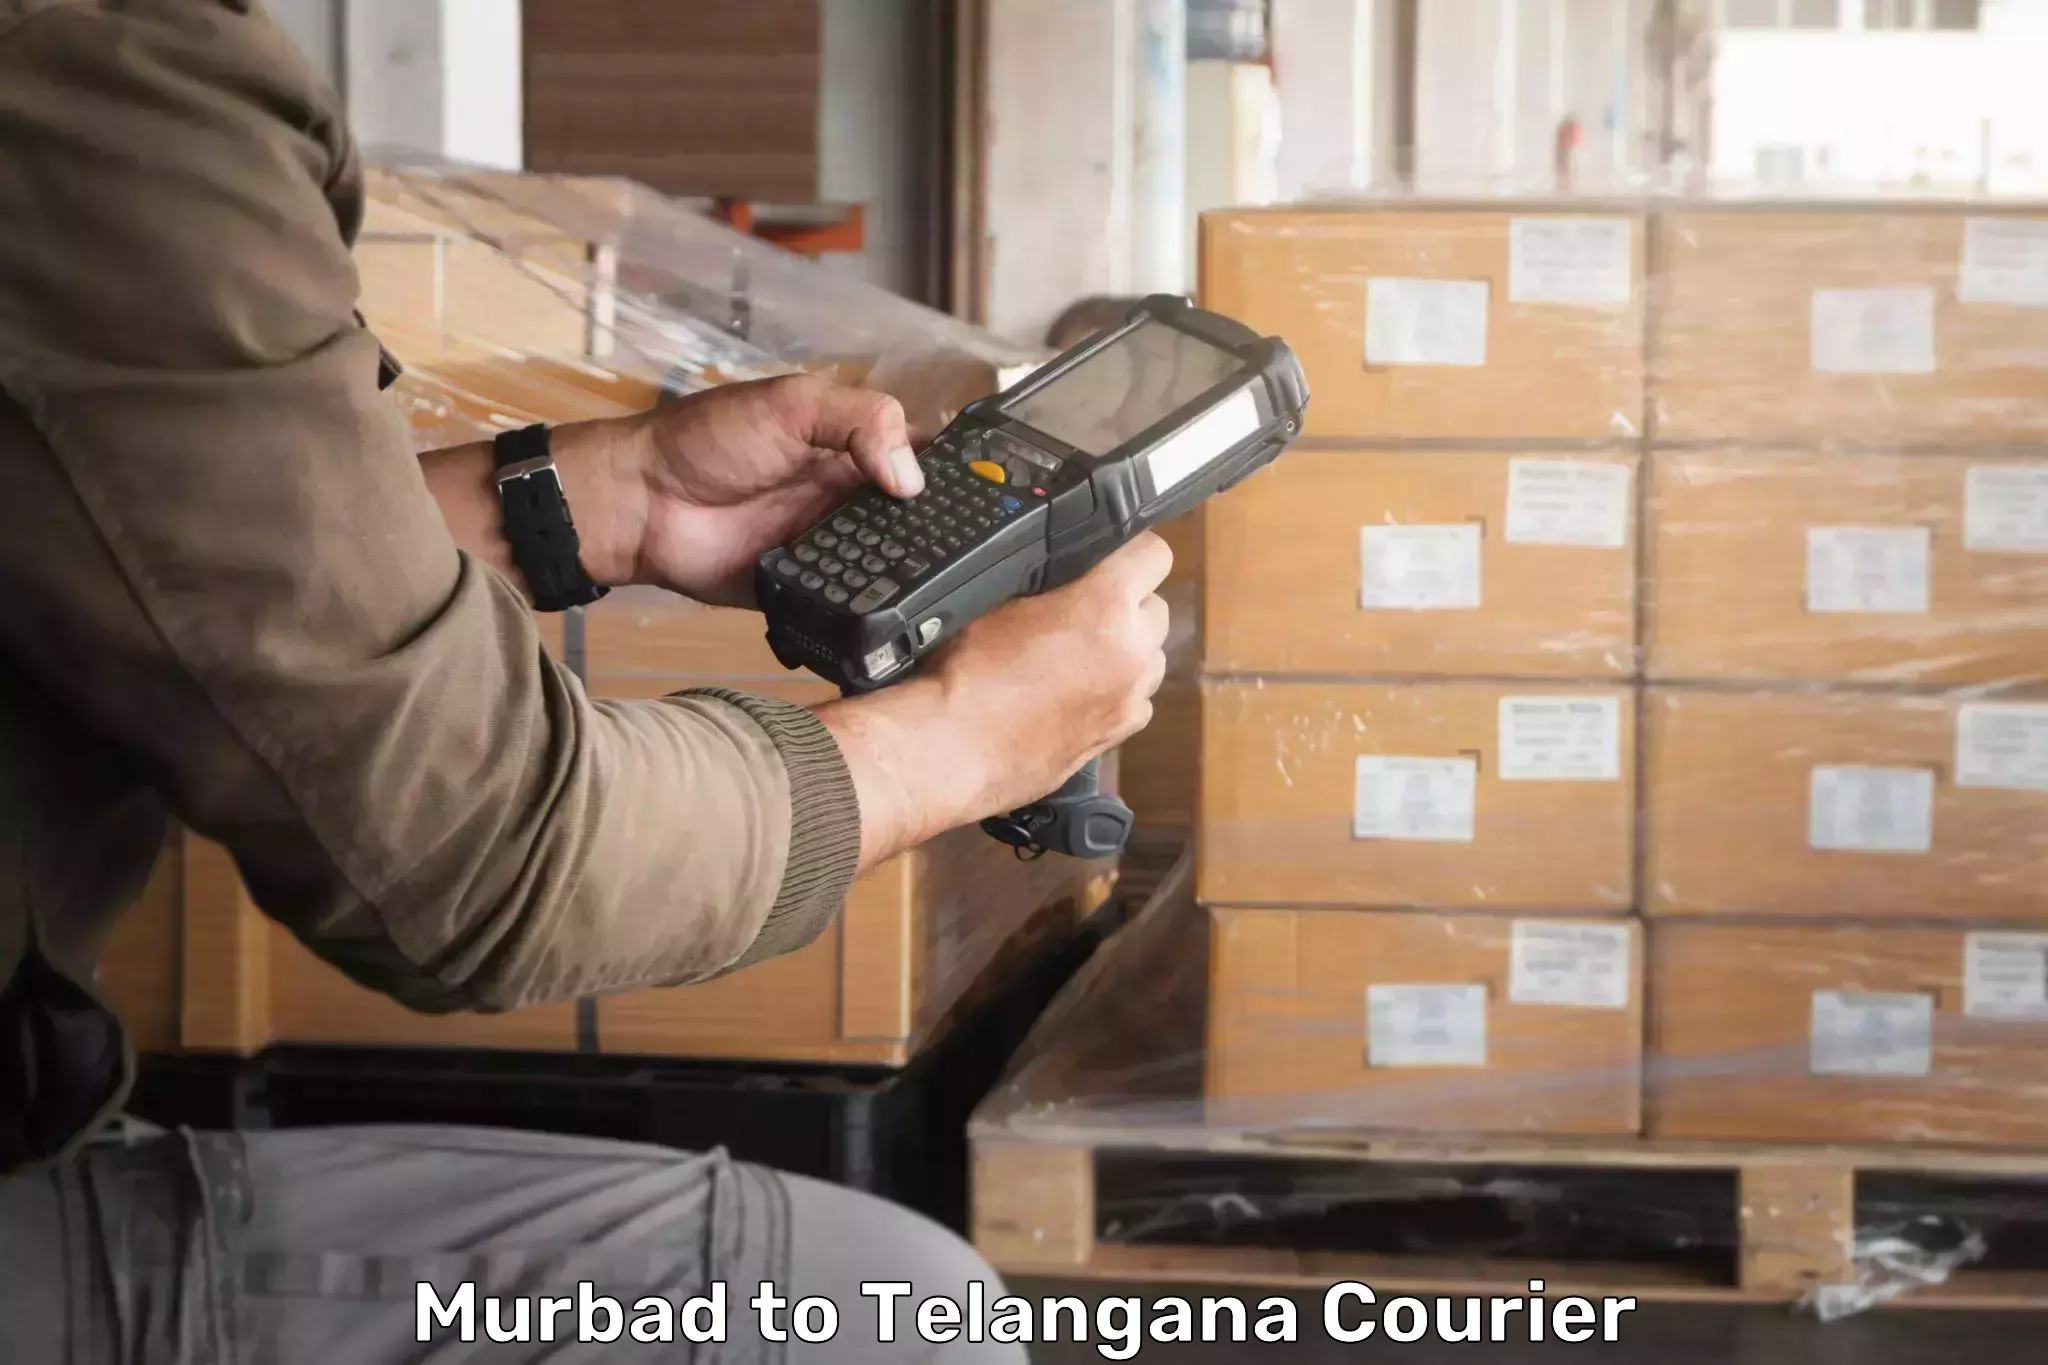 Customer-centric shipping Murbad to Kaghaznagar